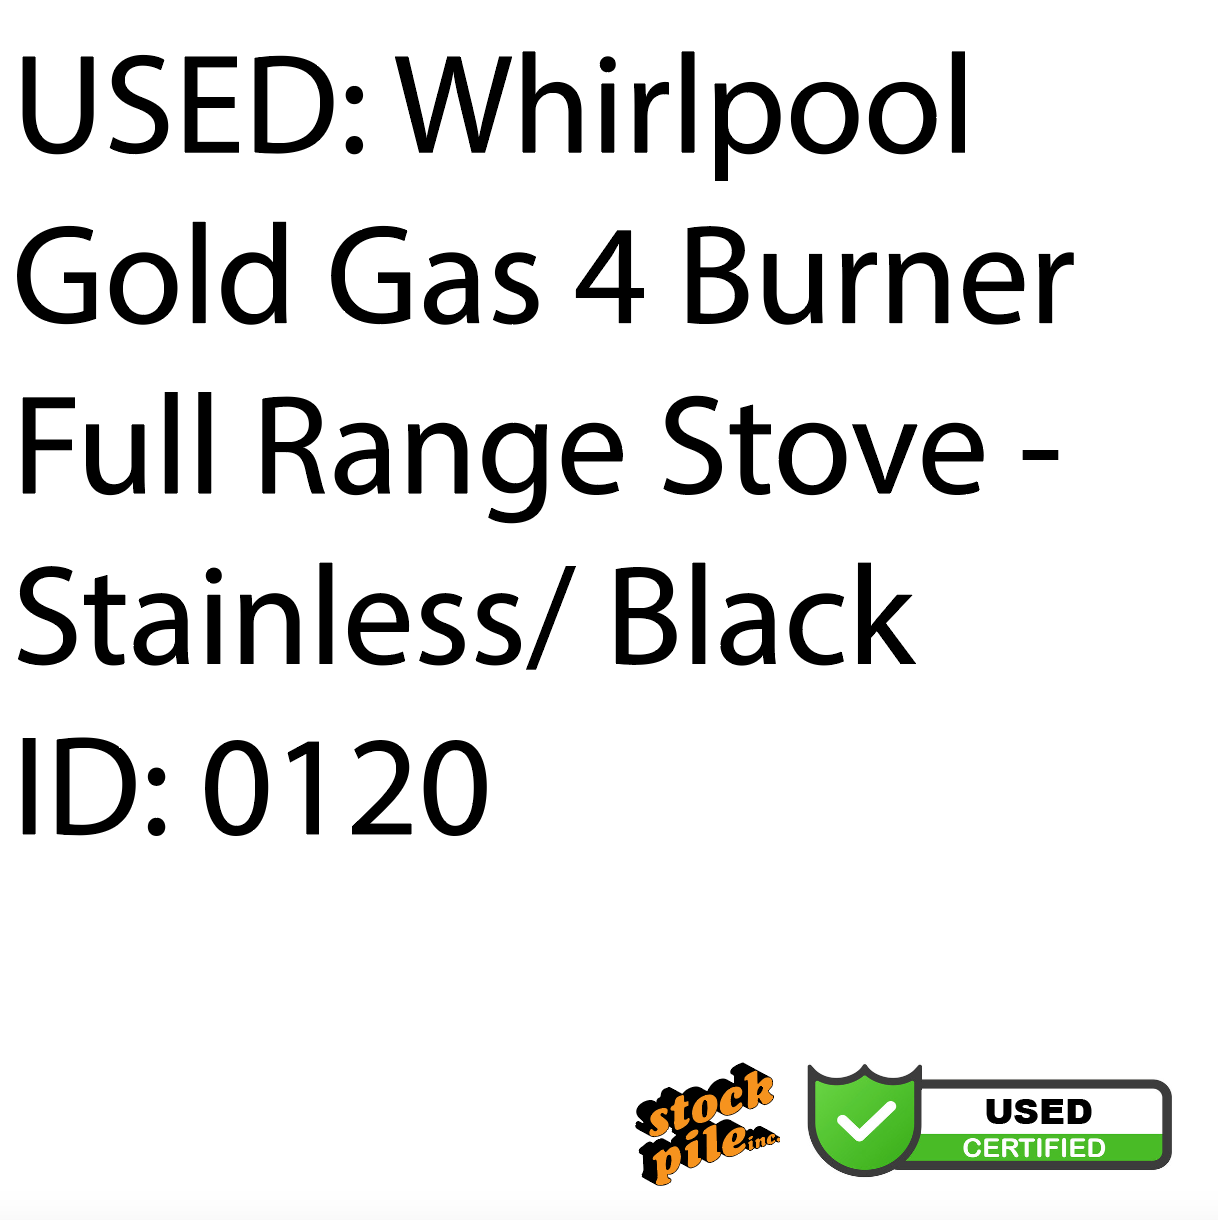 USED: Whirlpool Gold Gas 4 Burner Full Range Stove - Stainless/ Black